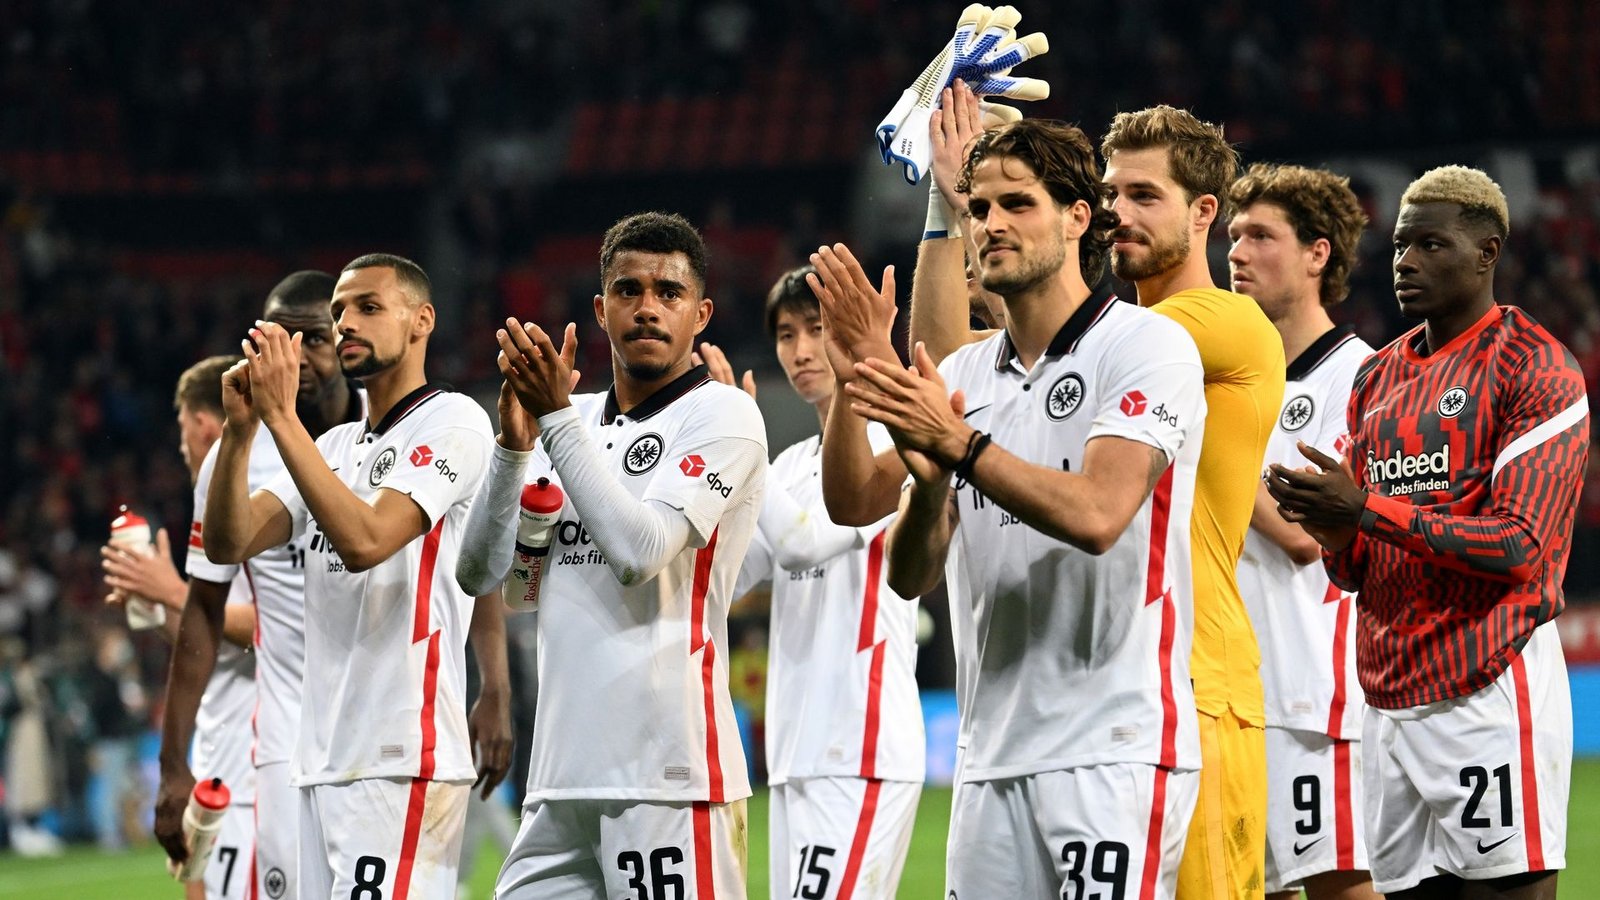 Frankfurts Spieler applaudieren mit den Fans nach der 2:0-Niederlage.Foto: Federico Gambarini/dpa